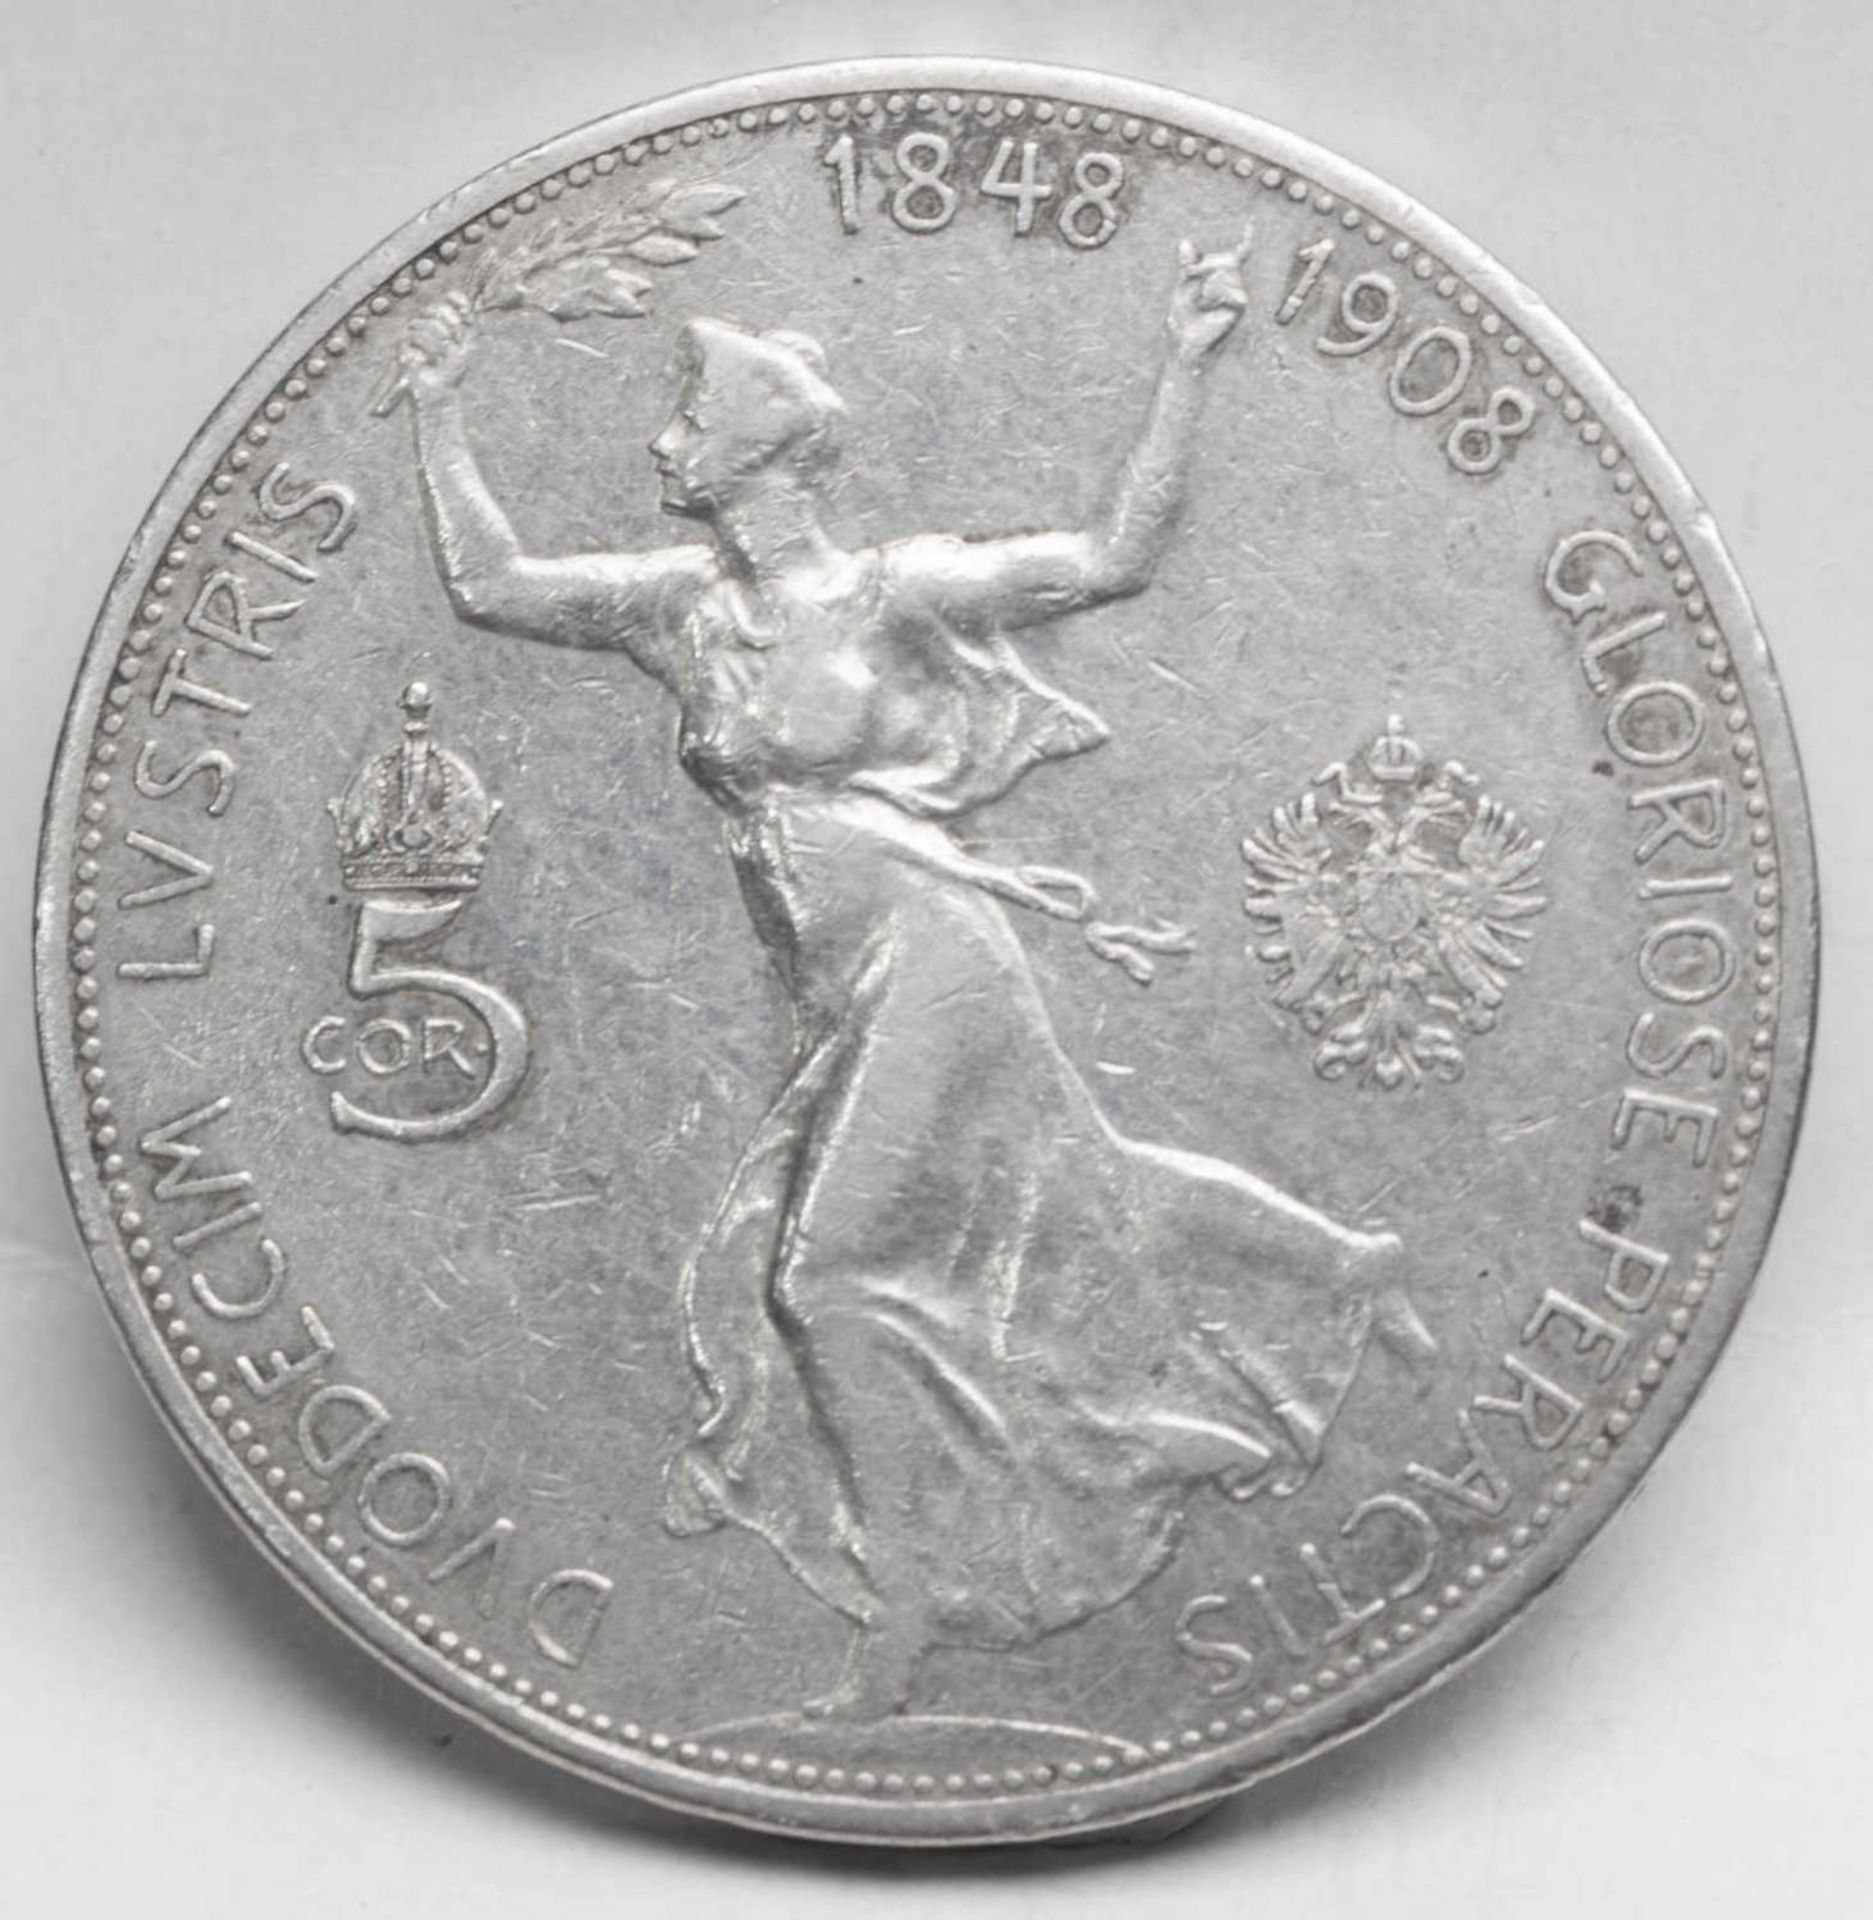 Österreich - Ungarn 1908, 5 Kronen - Silbermünze - Regierungsjubiläum Franz Joseph I. Gewicht: ca. - Image 2 of 2